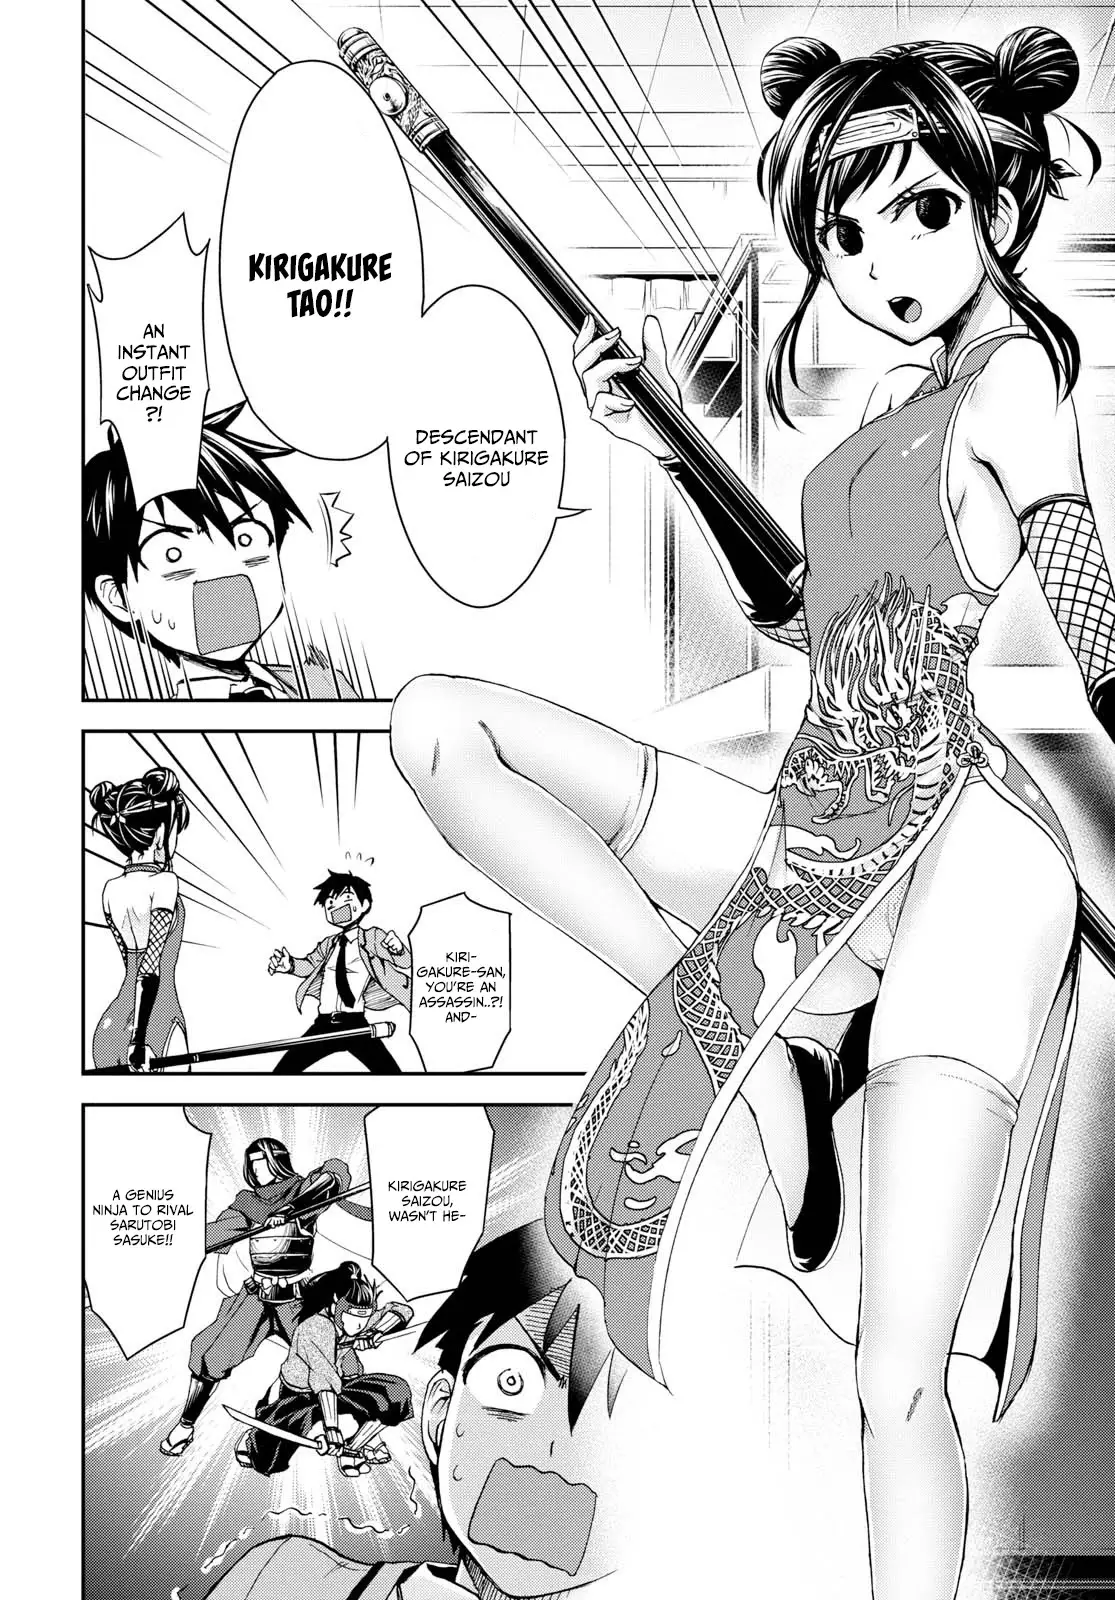 Shinobi Kill - 4 page 16